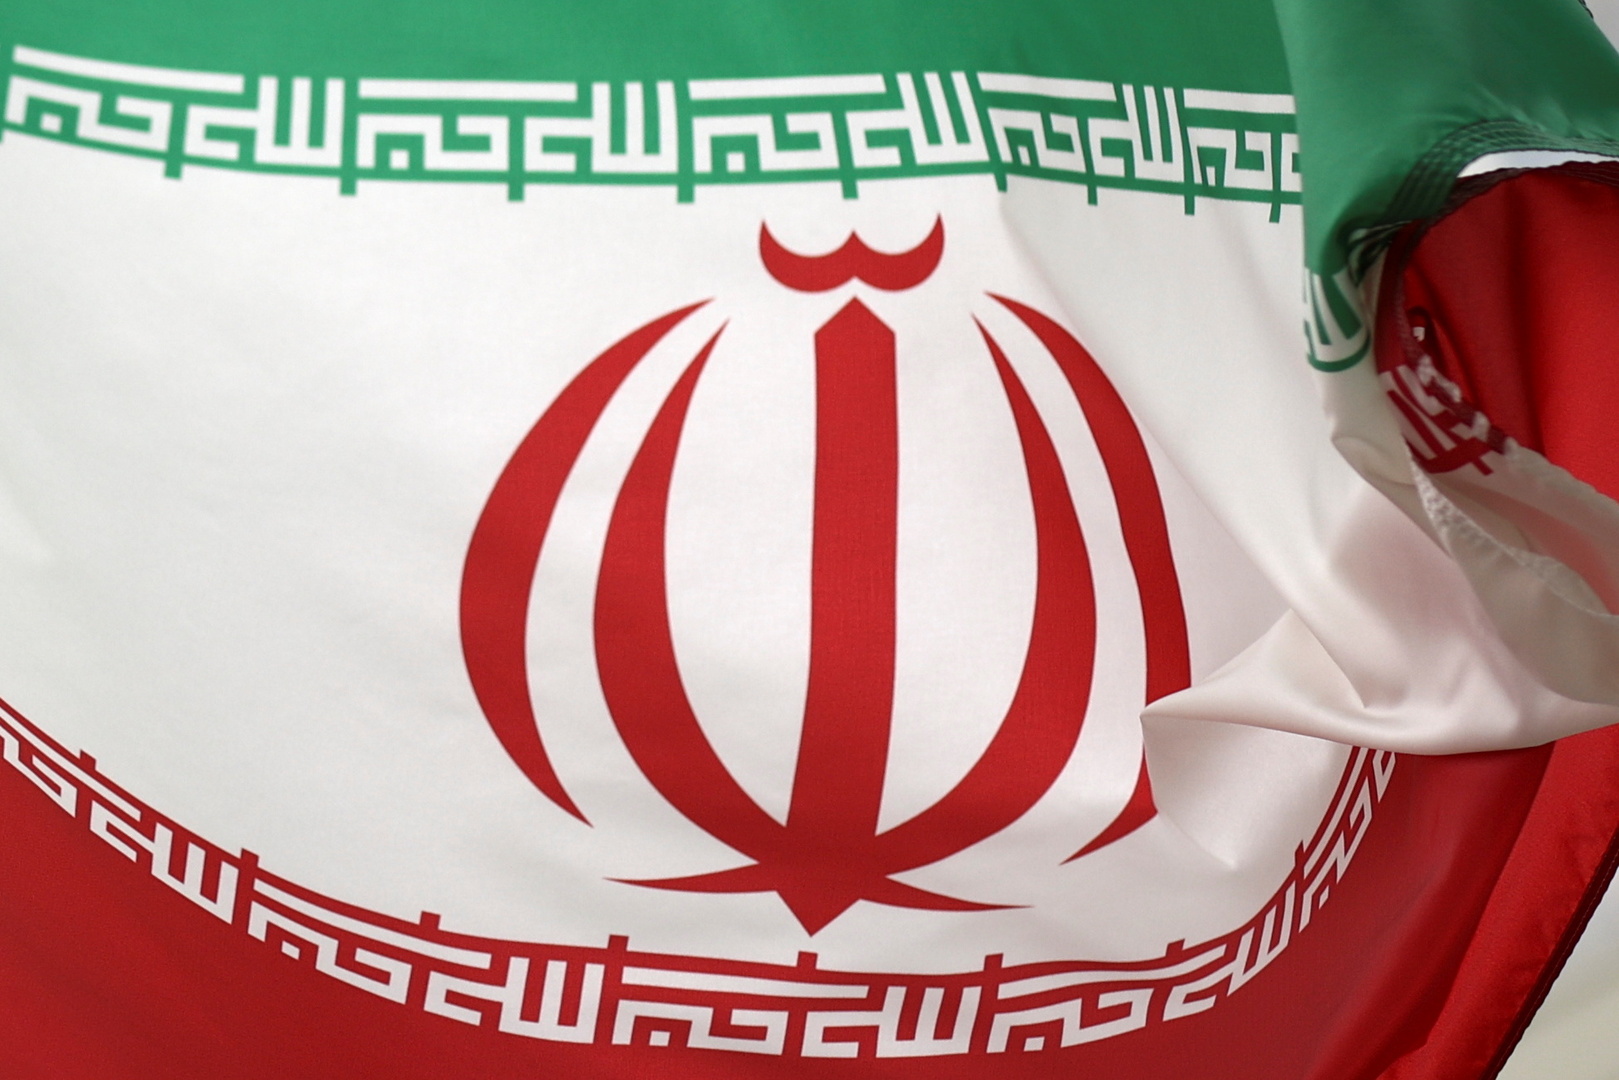 إيران ترد على البيان الختامي لقمة مجلس التعاون الخليجي وتقول إنه 